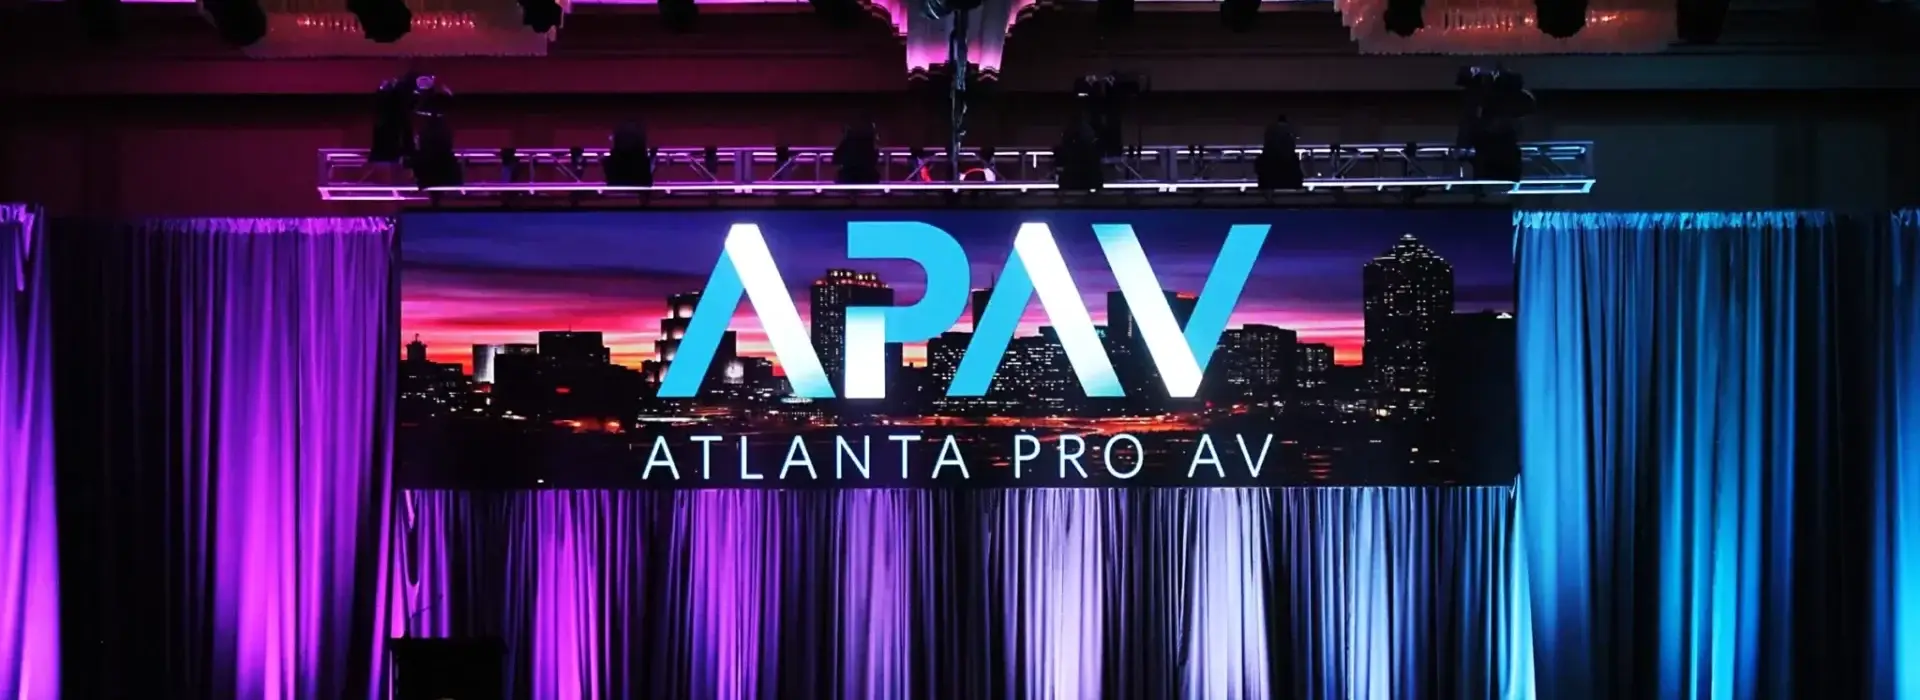 APAV Live Events Scaled E1667592957330, Atlanta Pro AV